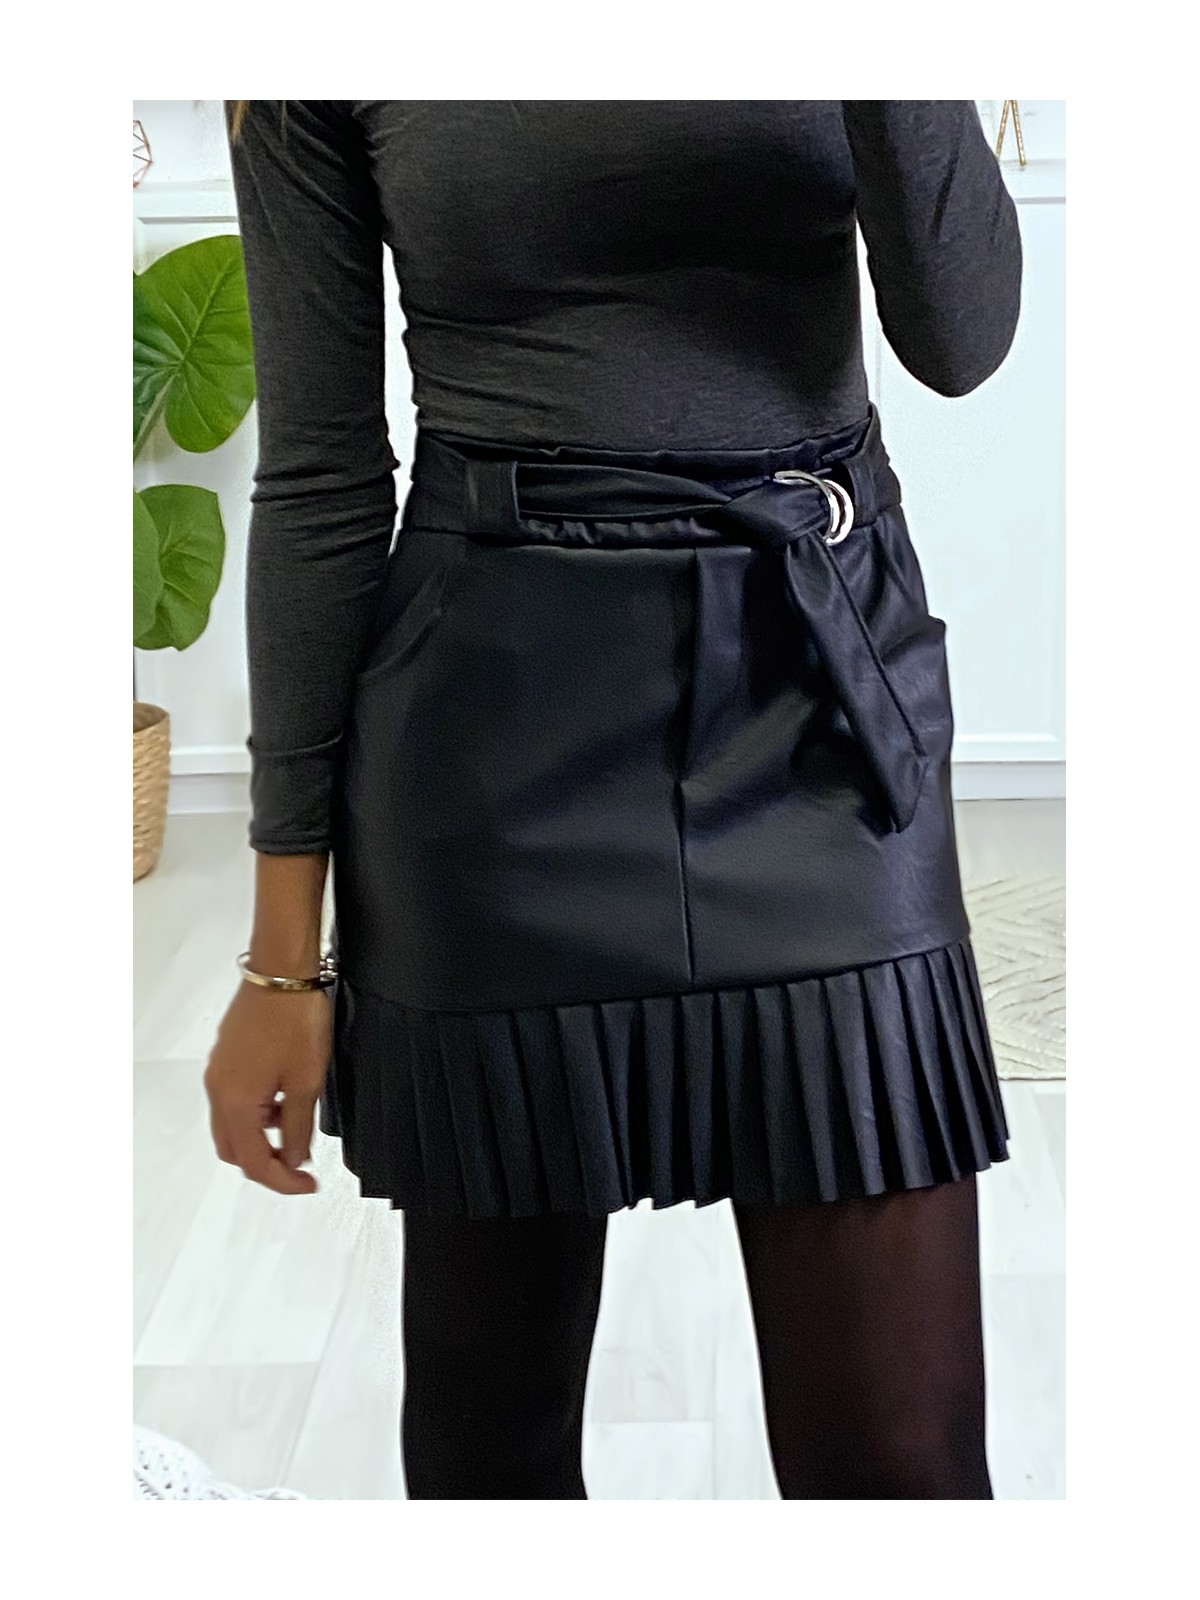 Jolie jupe noire très tendance en simili avec ceinture plis et poche - 2